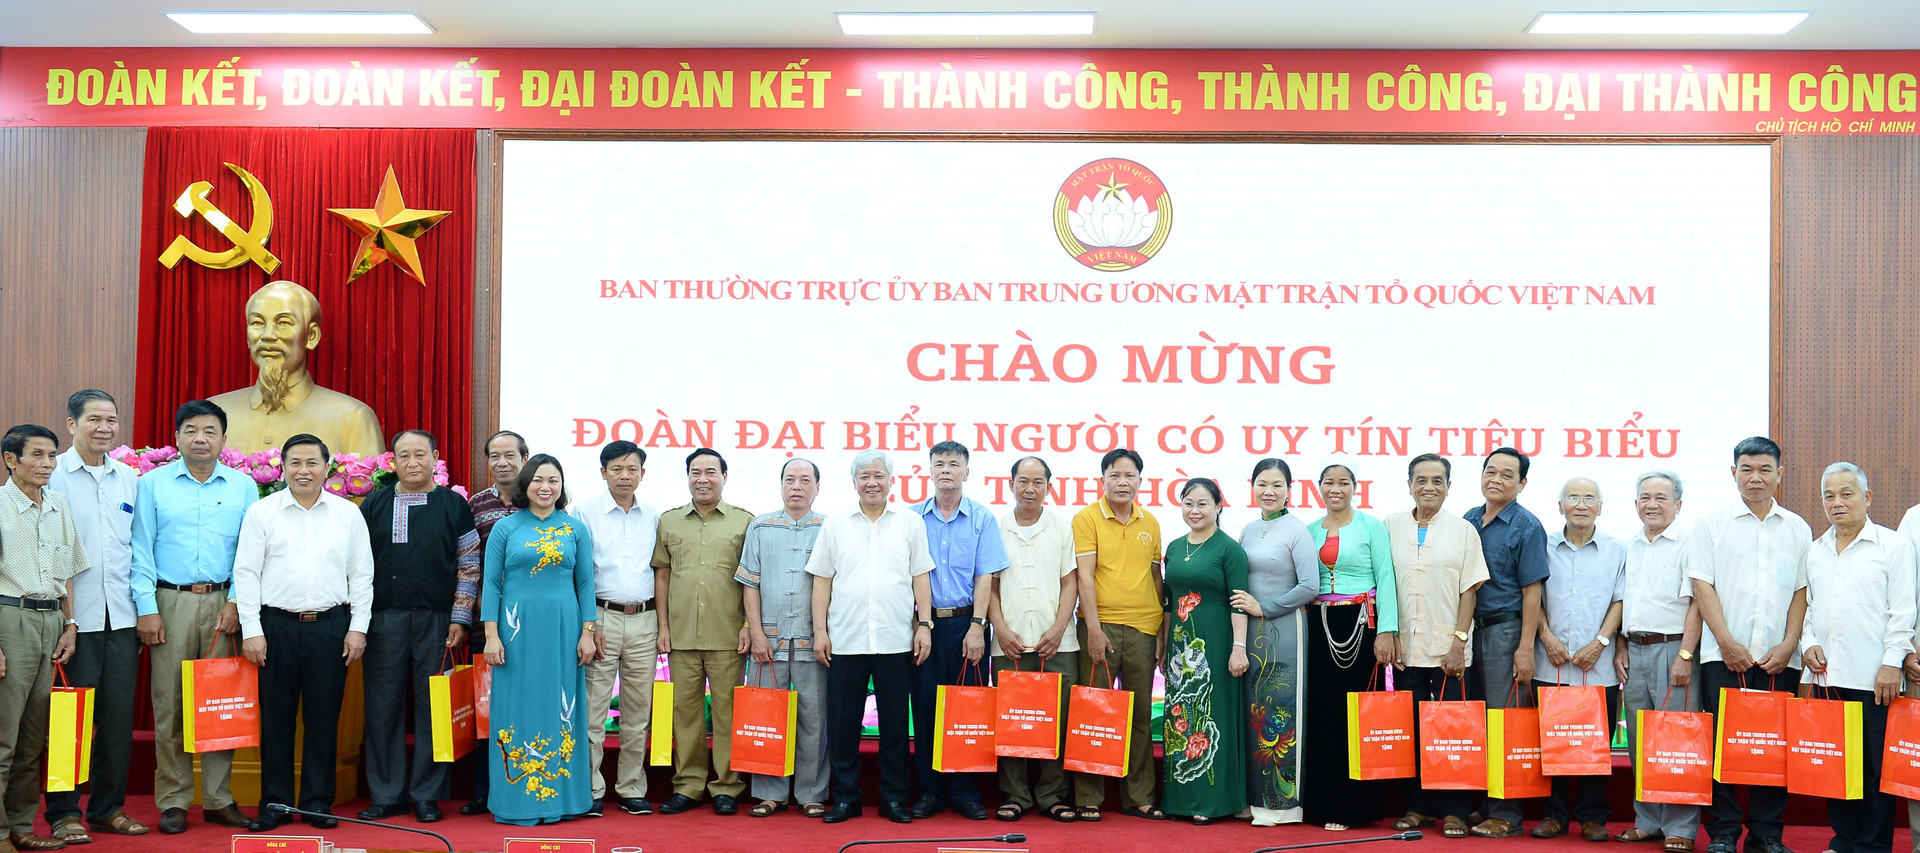 Chủ tịch Đỗ Văn Chiến và Phó Chủ tịch Trương Thị Ngọc Ánh tặng quà cho người uy tín tiêu biểu tỉnh Hòa Bình.